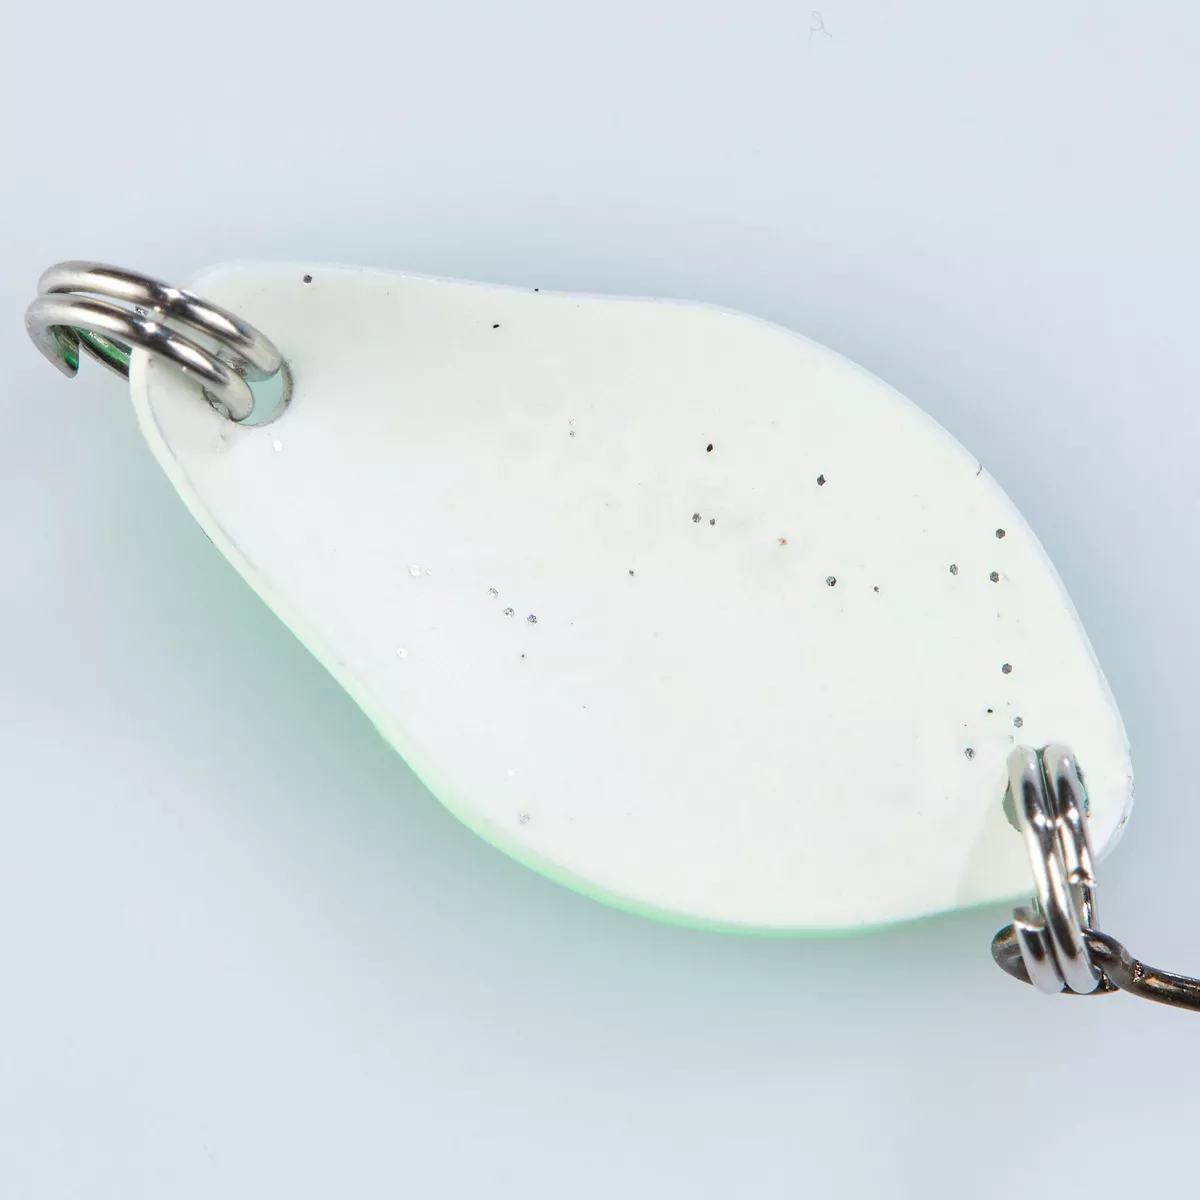 BALZER Trout Attack Spoon Jacky leuchtgrün-weiß 2,5cm 2,5g